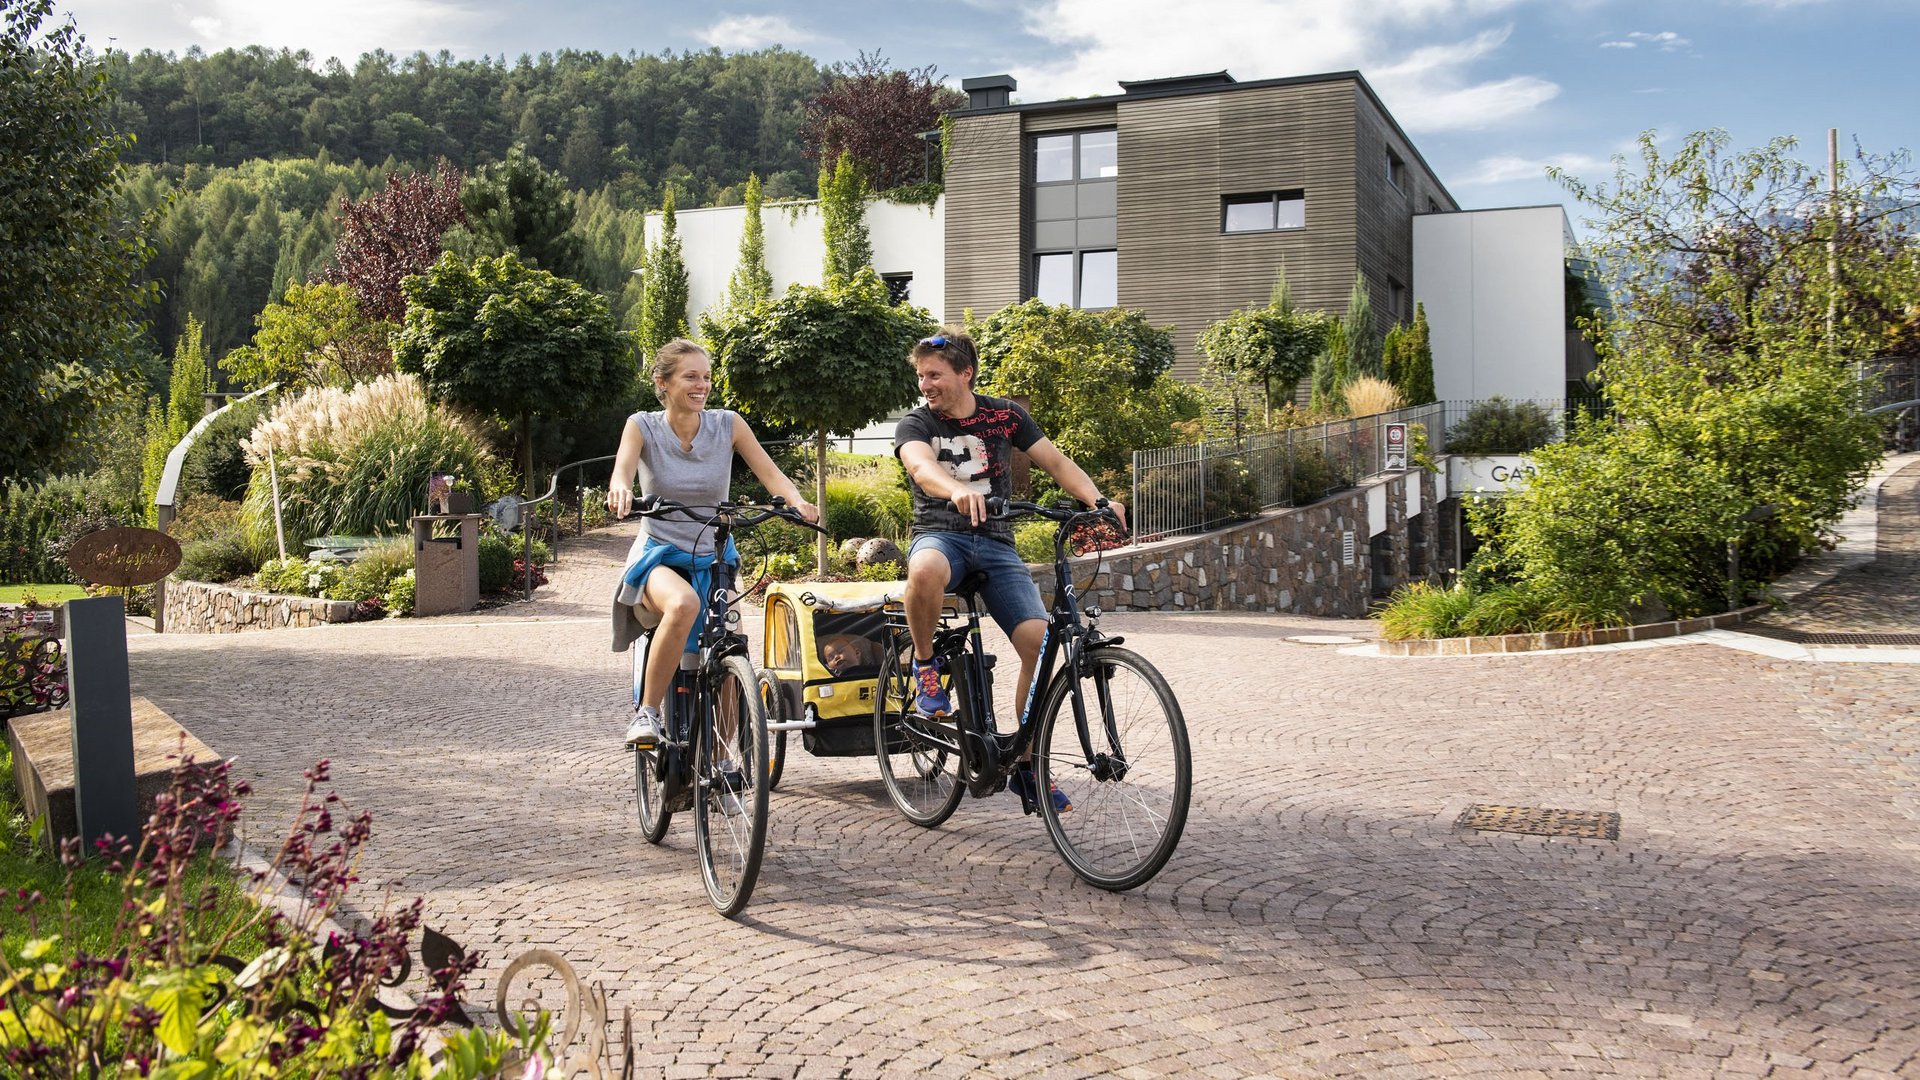 Hotel per famiglie in Trentino-Alto Adige: tour in bici